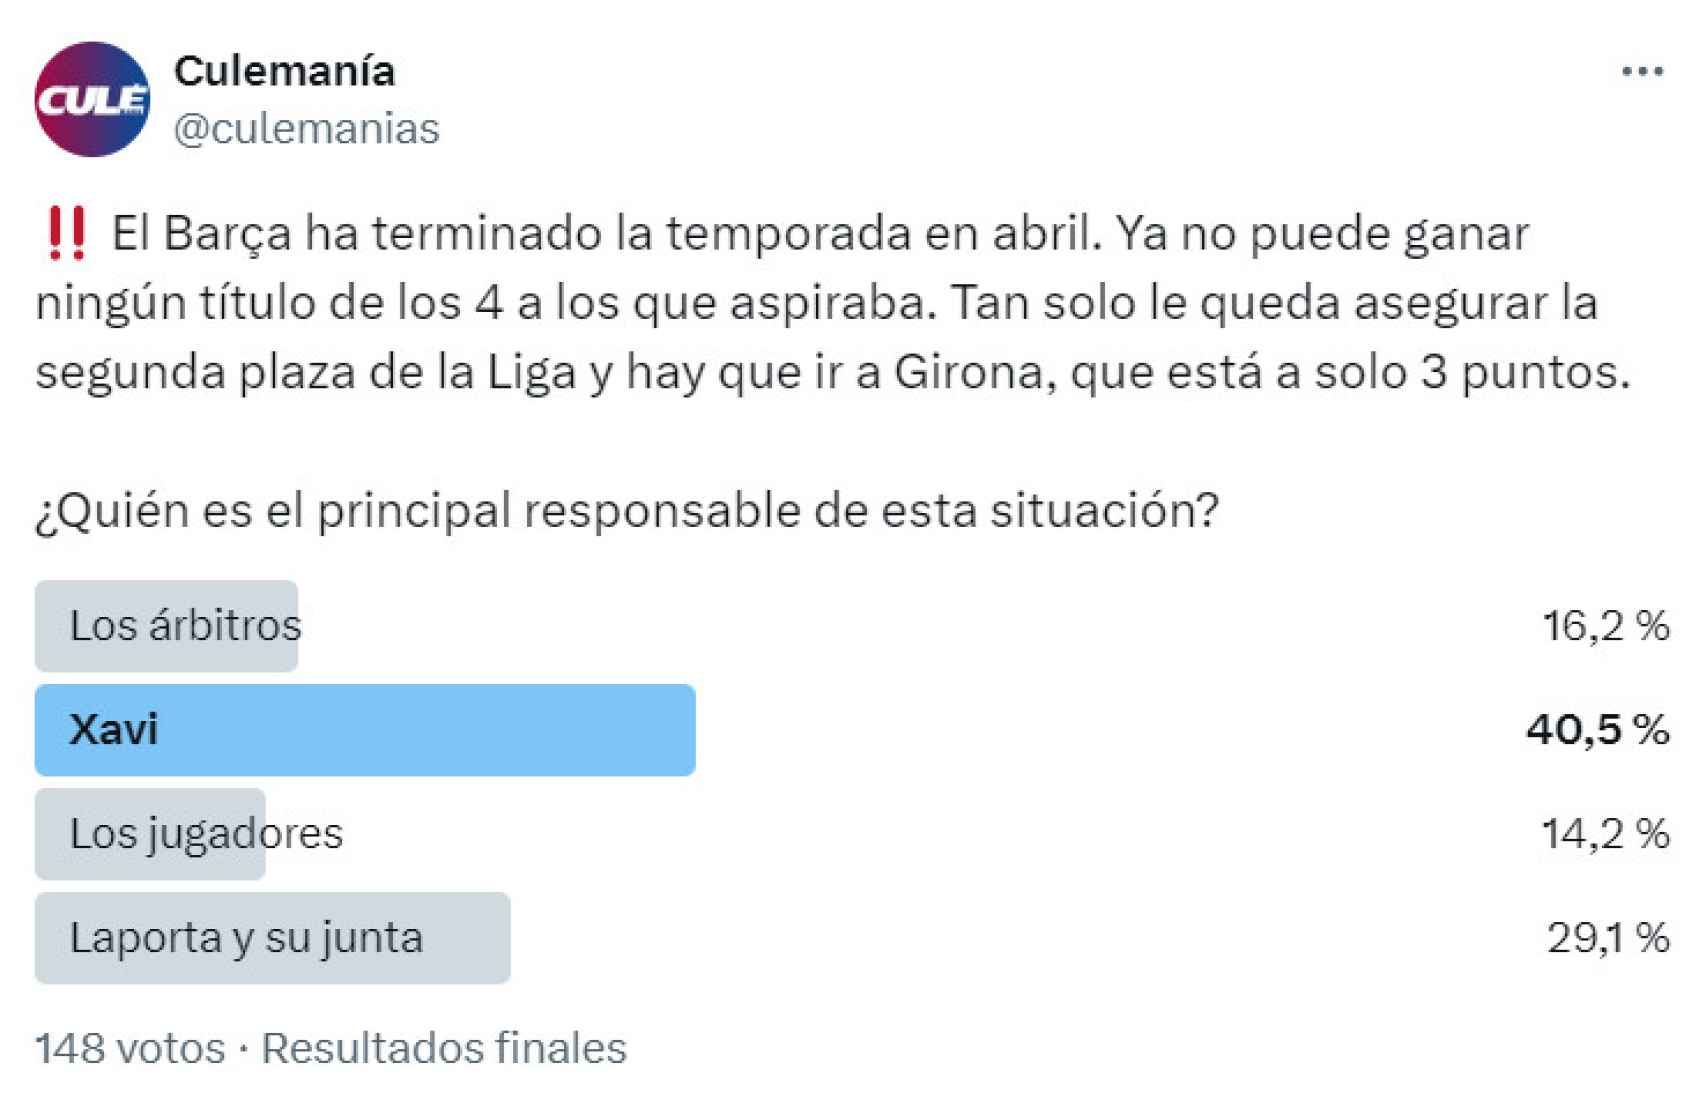 La encuesta de Culemanía sobre los principales responsables de la temporada sin títulos del Barça